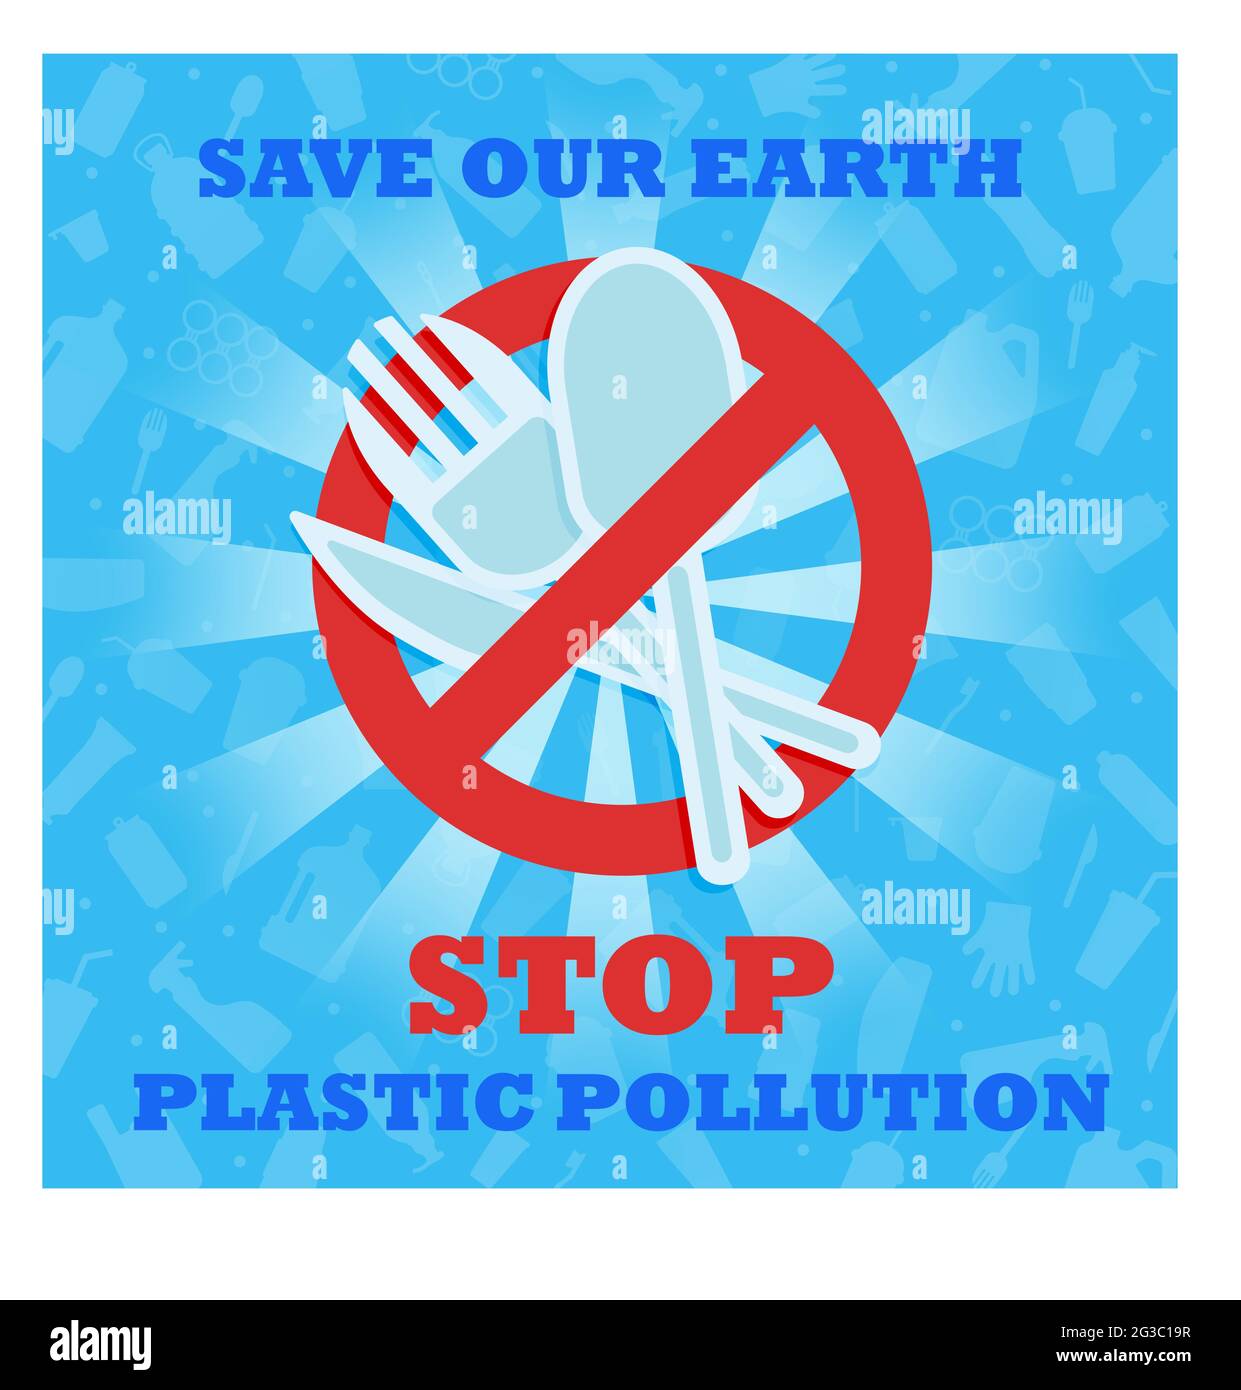 Stoppen Sie die Plastikverschmutzung. Rette unsere Erde. Banner mit rotem Verbotsschild, durchgestrichen mit Plastikutensilien. Löffel Gabelmesser aus Kunststoff. Umwelt Stock Vektor